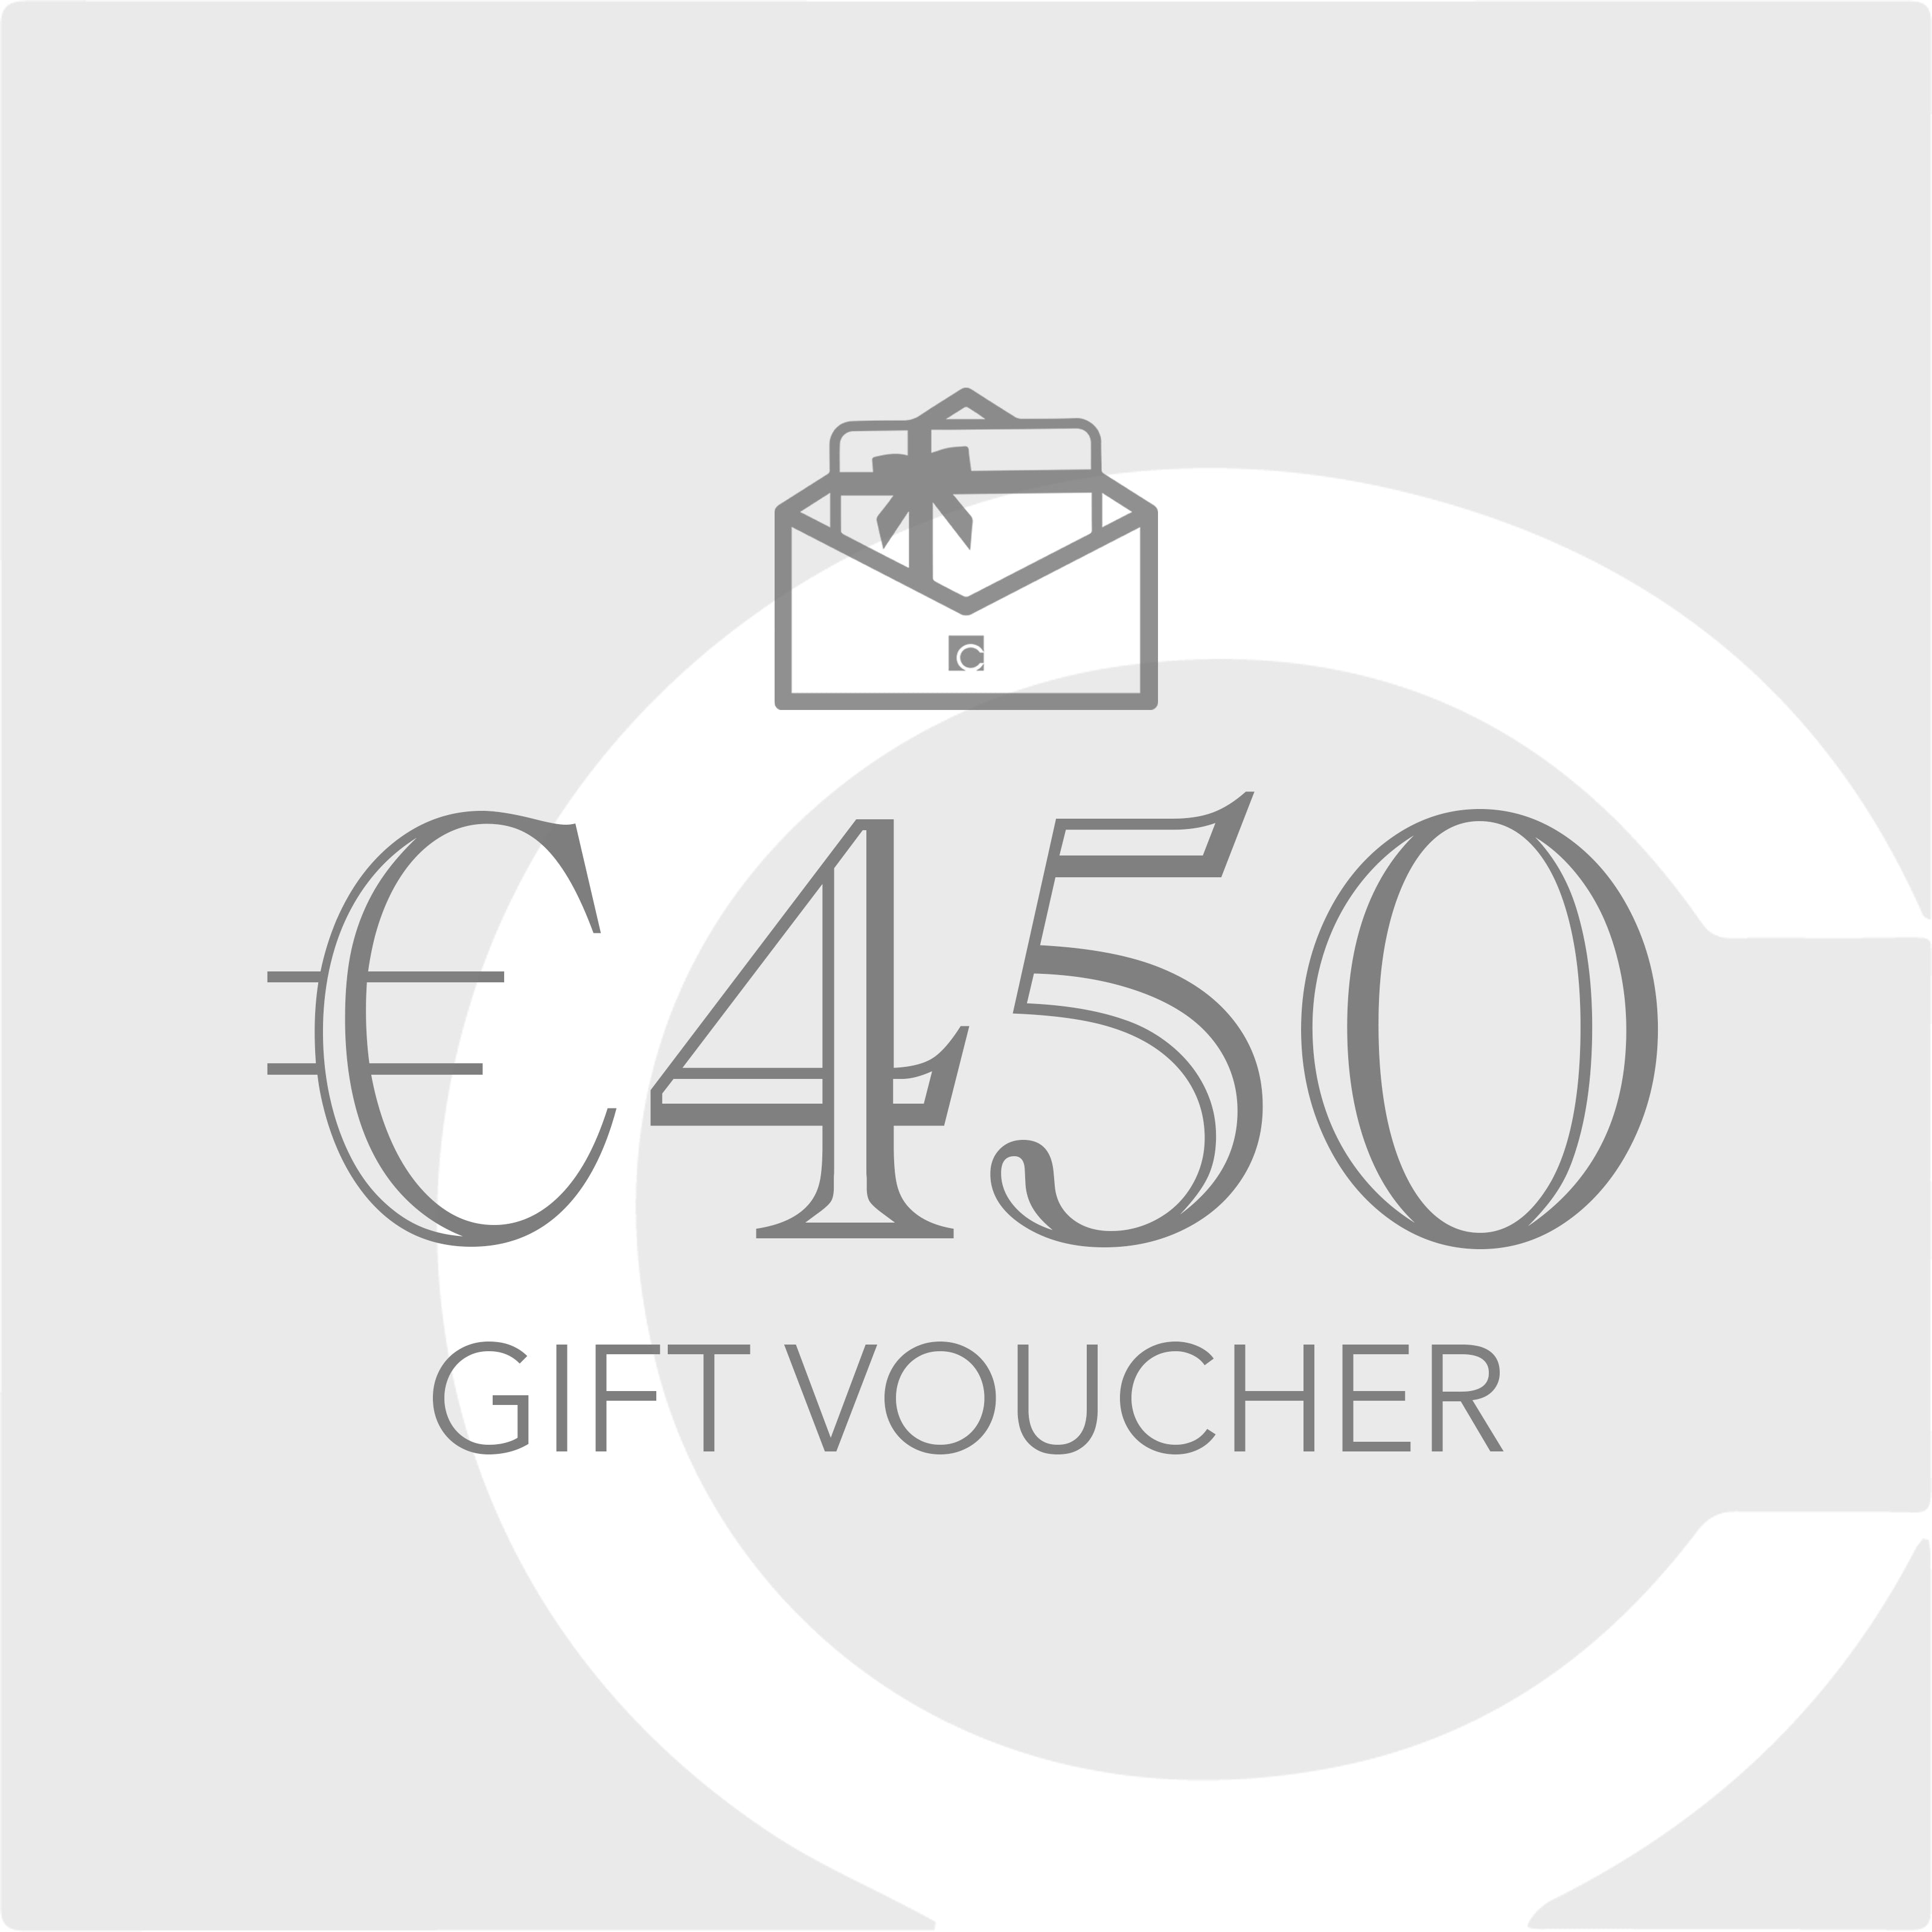 €450 Gift Voucher